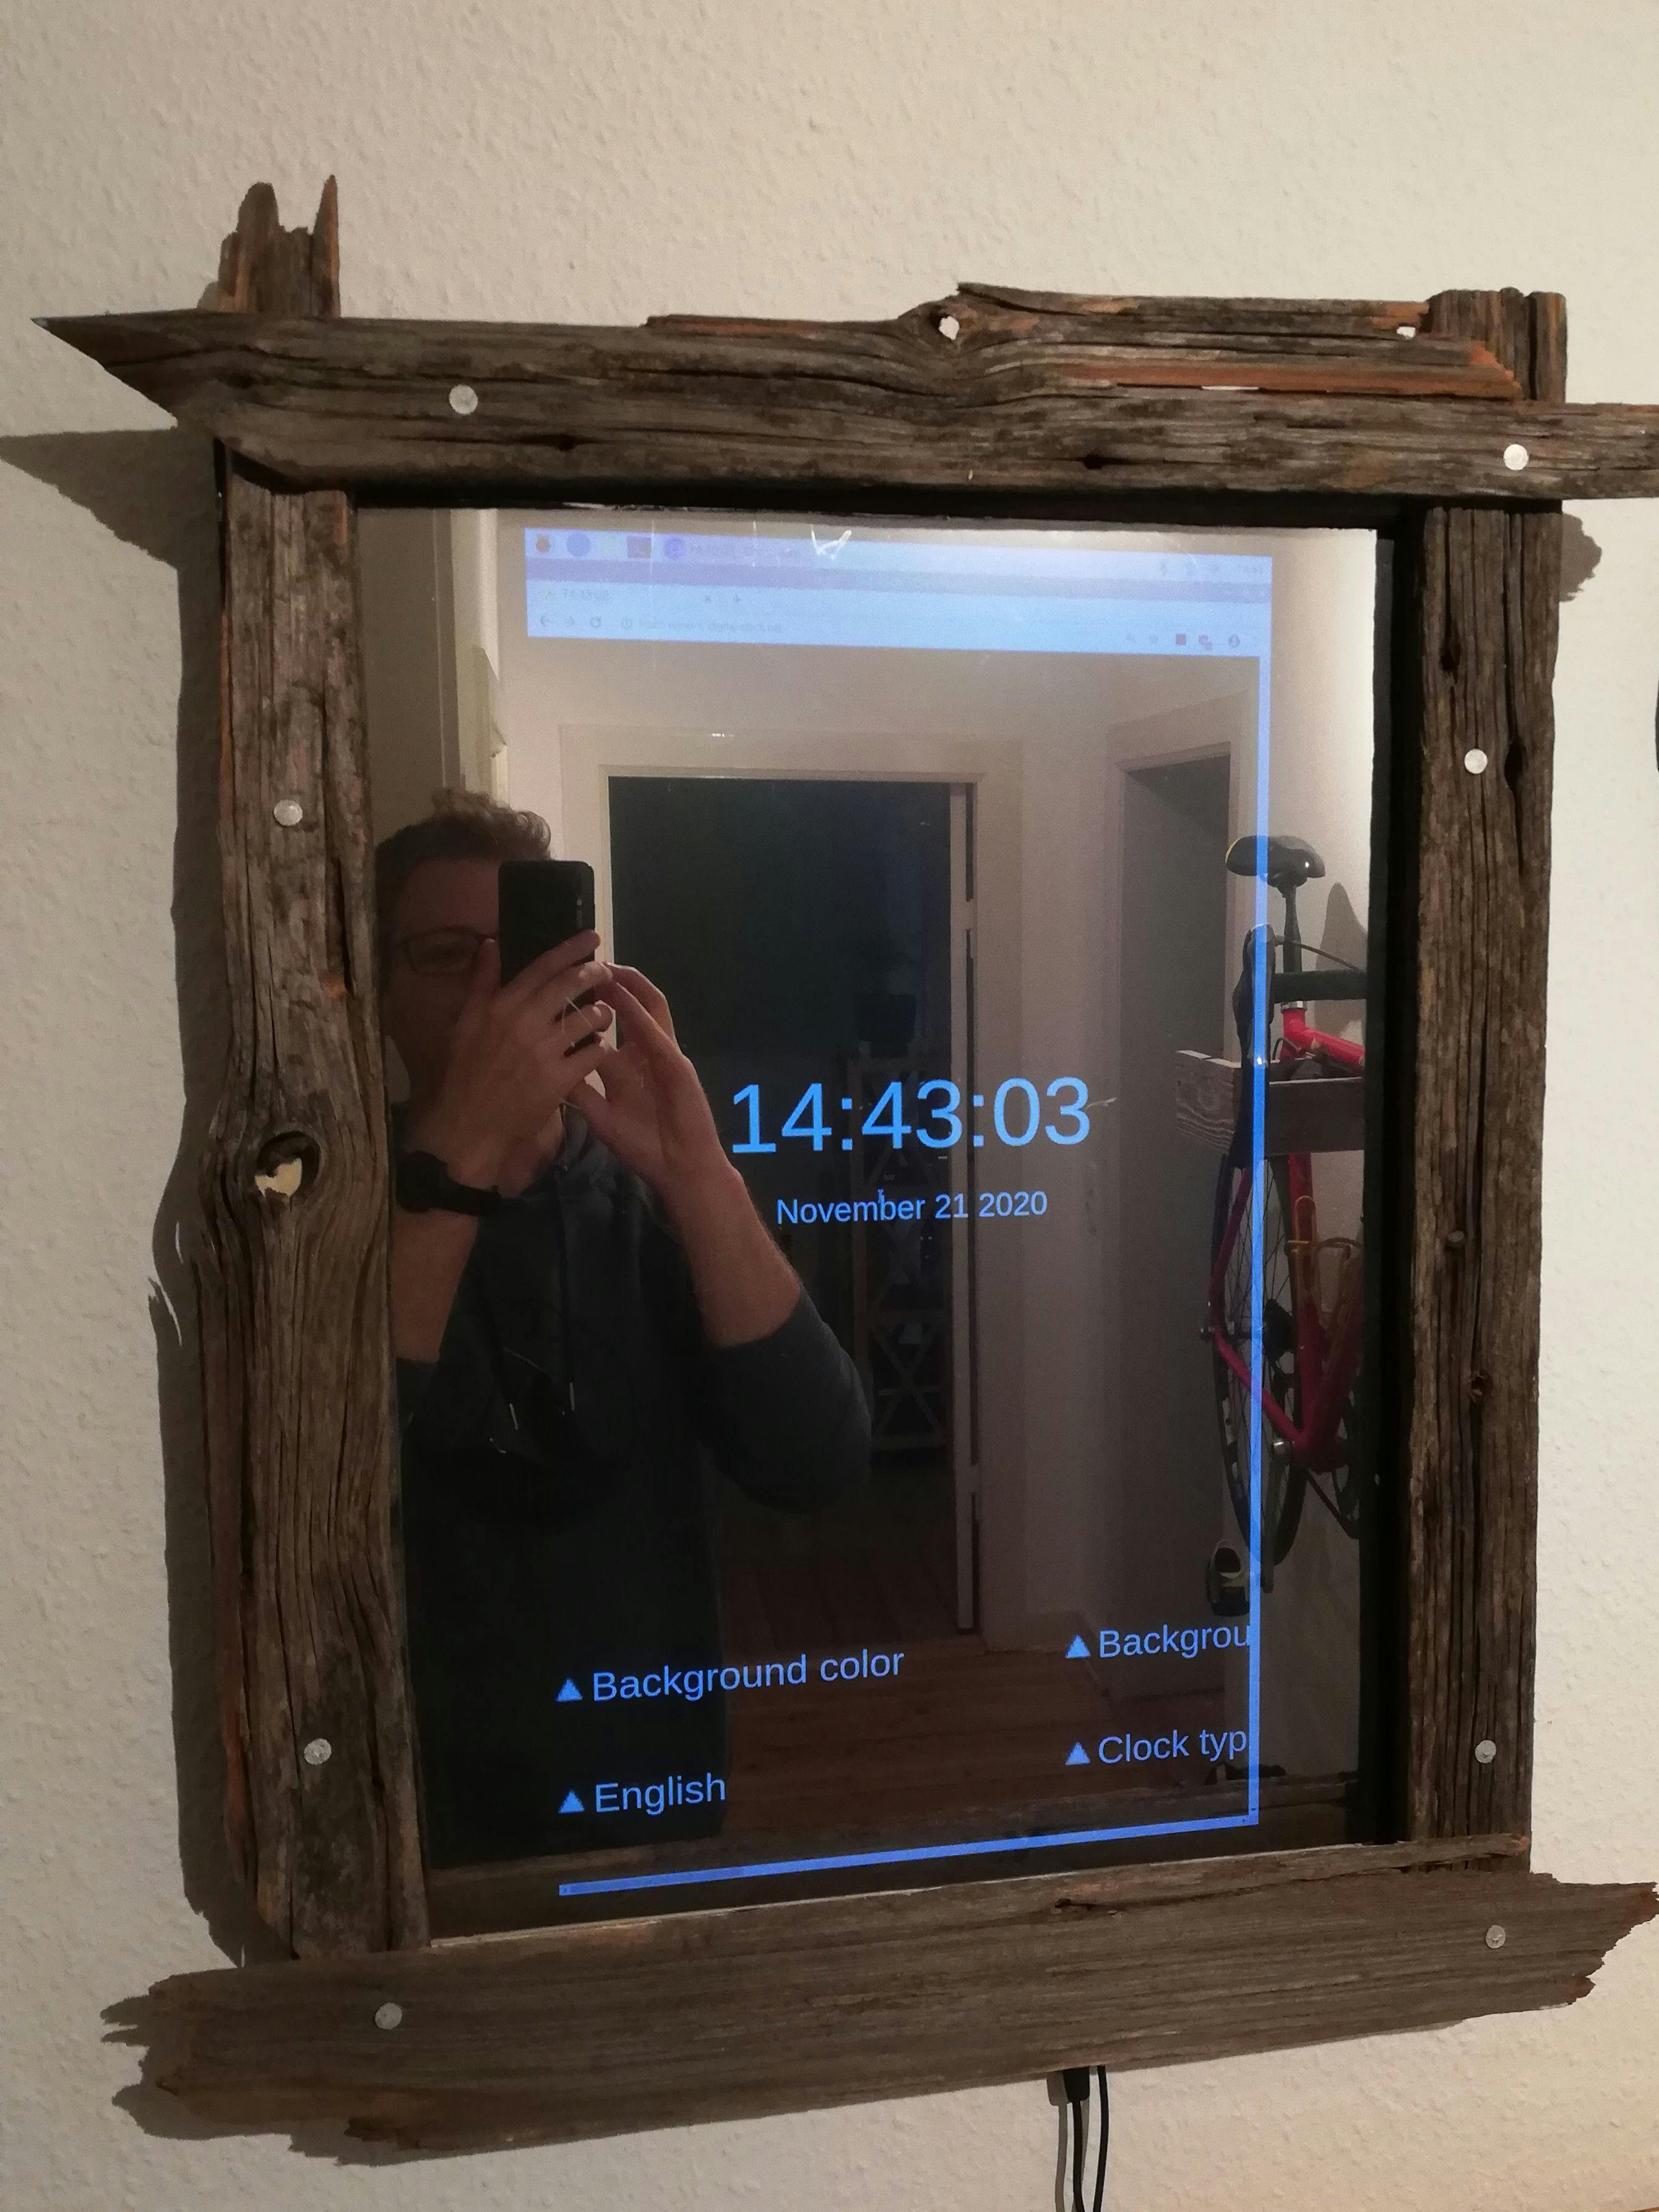 Halbtransparenter Spiegel durch den ein Bildschirm scheint, auf dem eine Uhr zu sehen ist